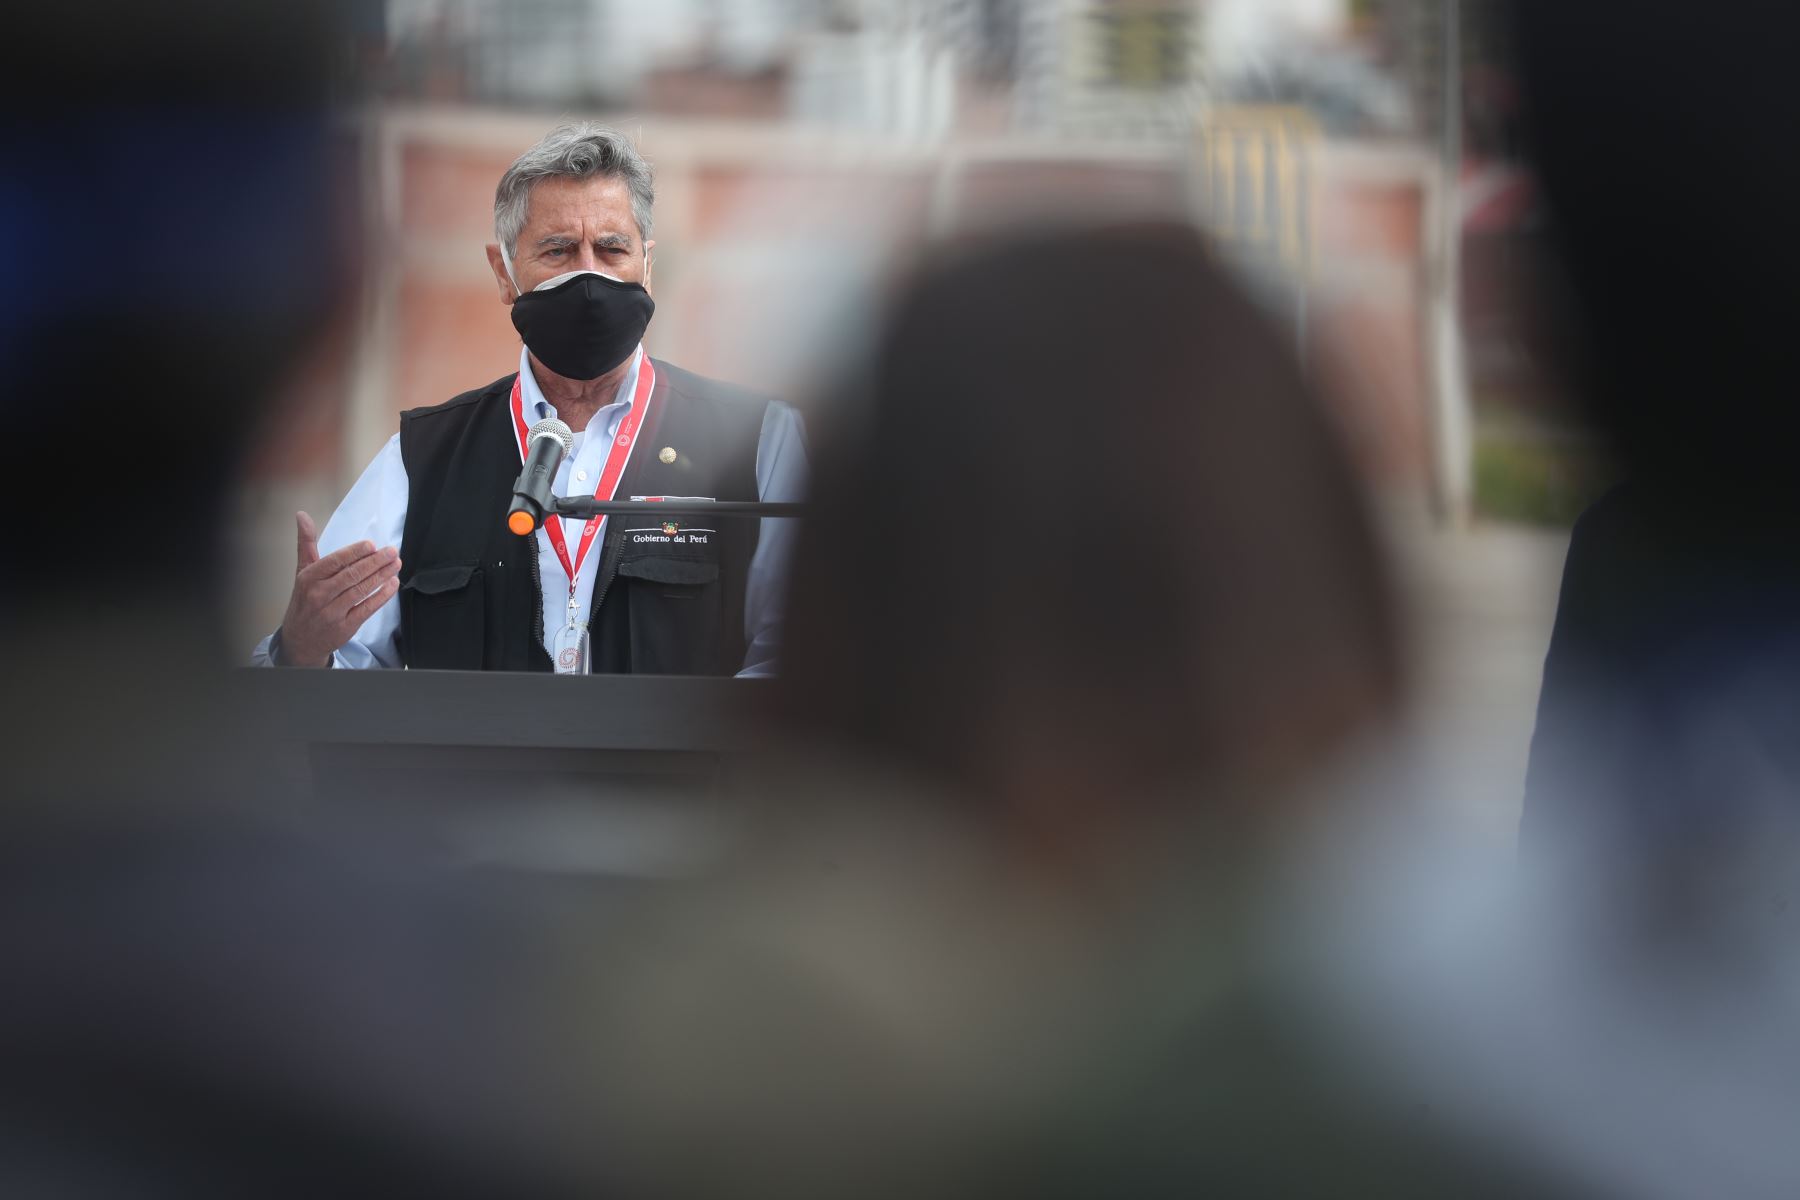 El presidente Francisco Sagasti, junto con los titulares del Minsa, Mincetur y Minam, lidera la entrega de 17 550 dosis de vacuna de Pfizer a la región Cusco. Foto: ANDINA/Prensa Presidencia